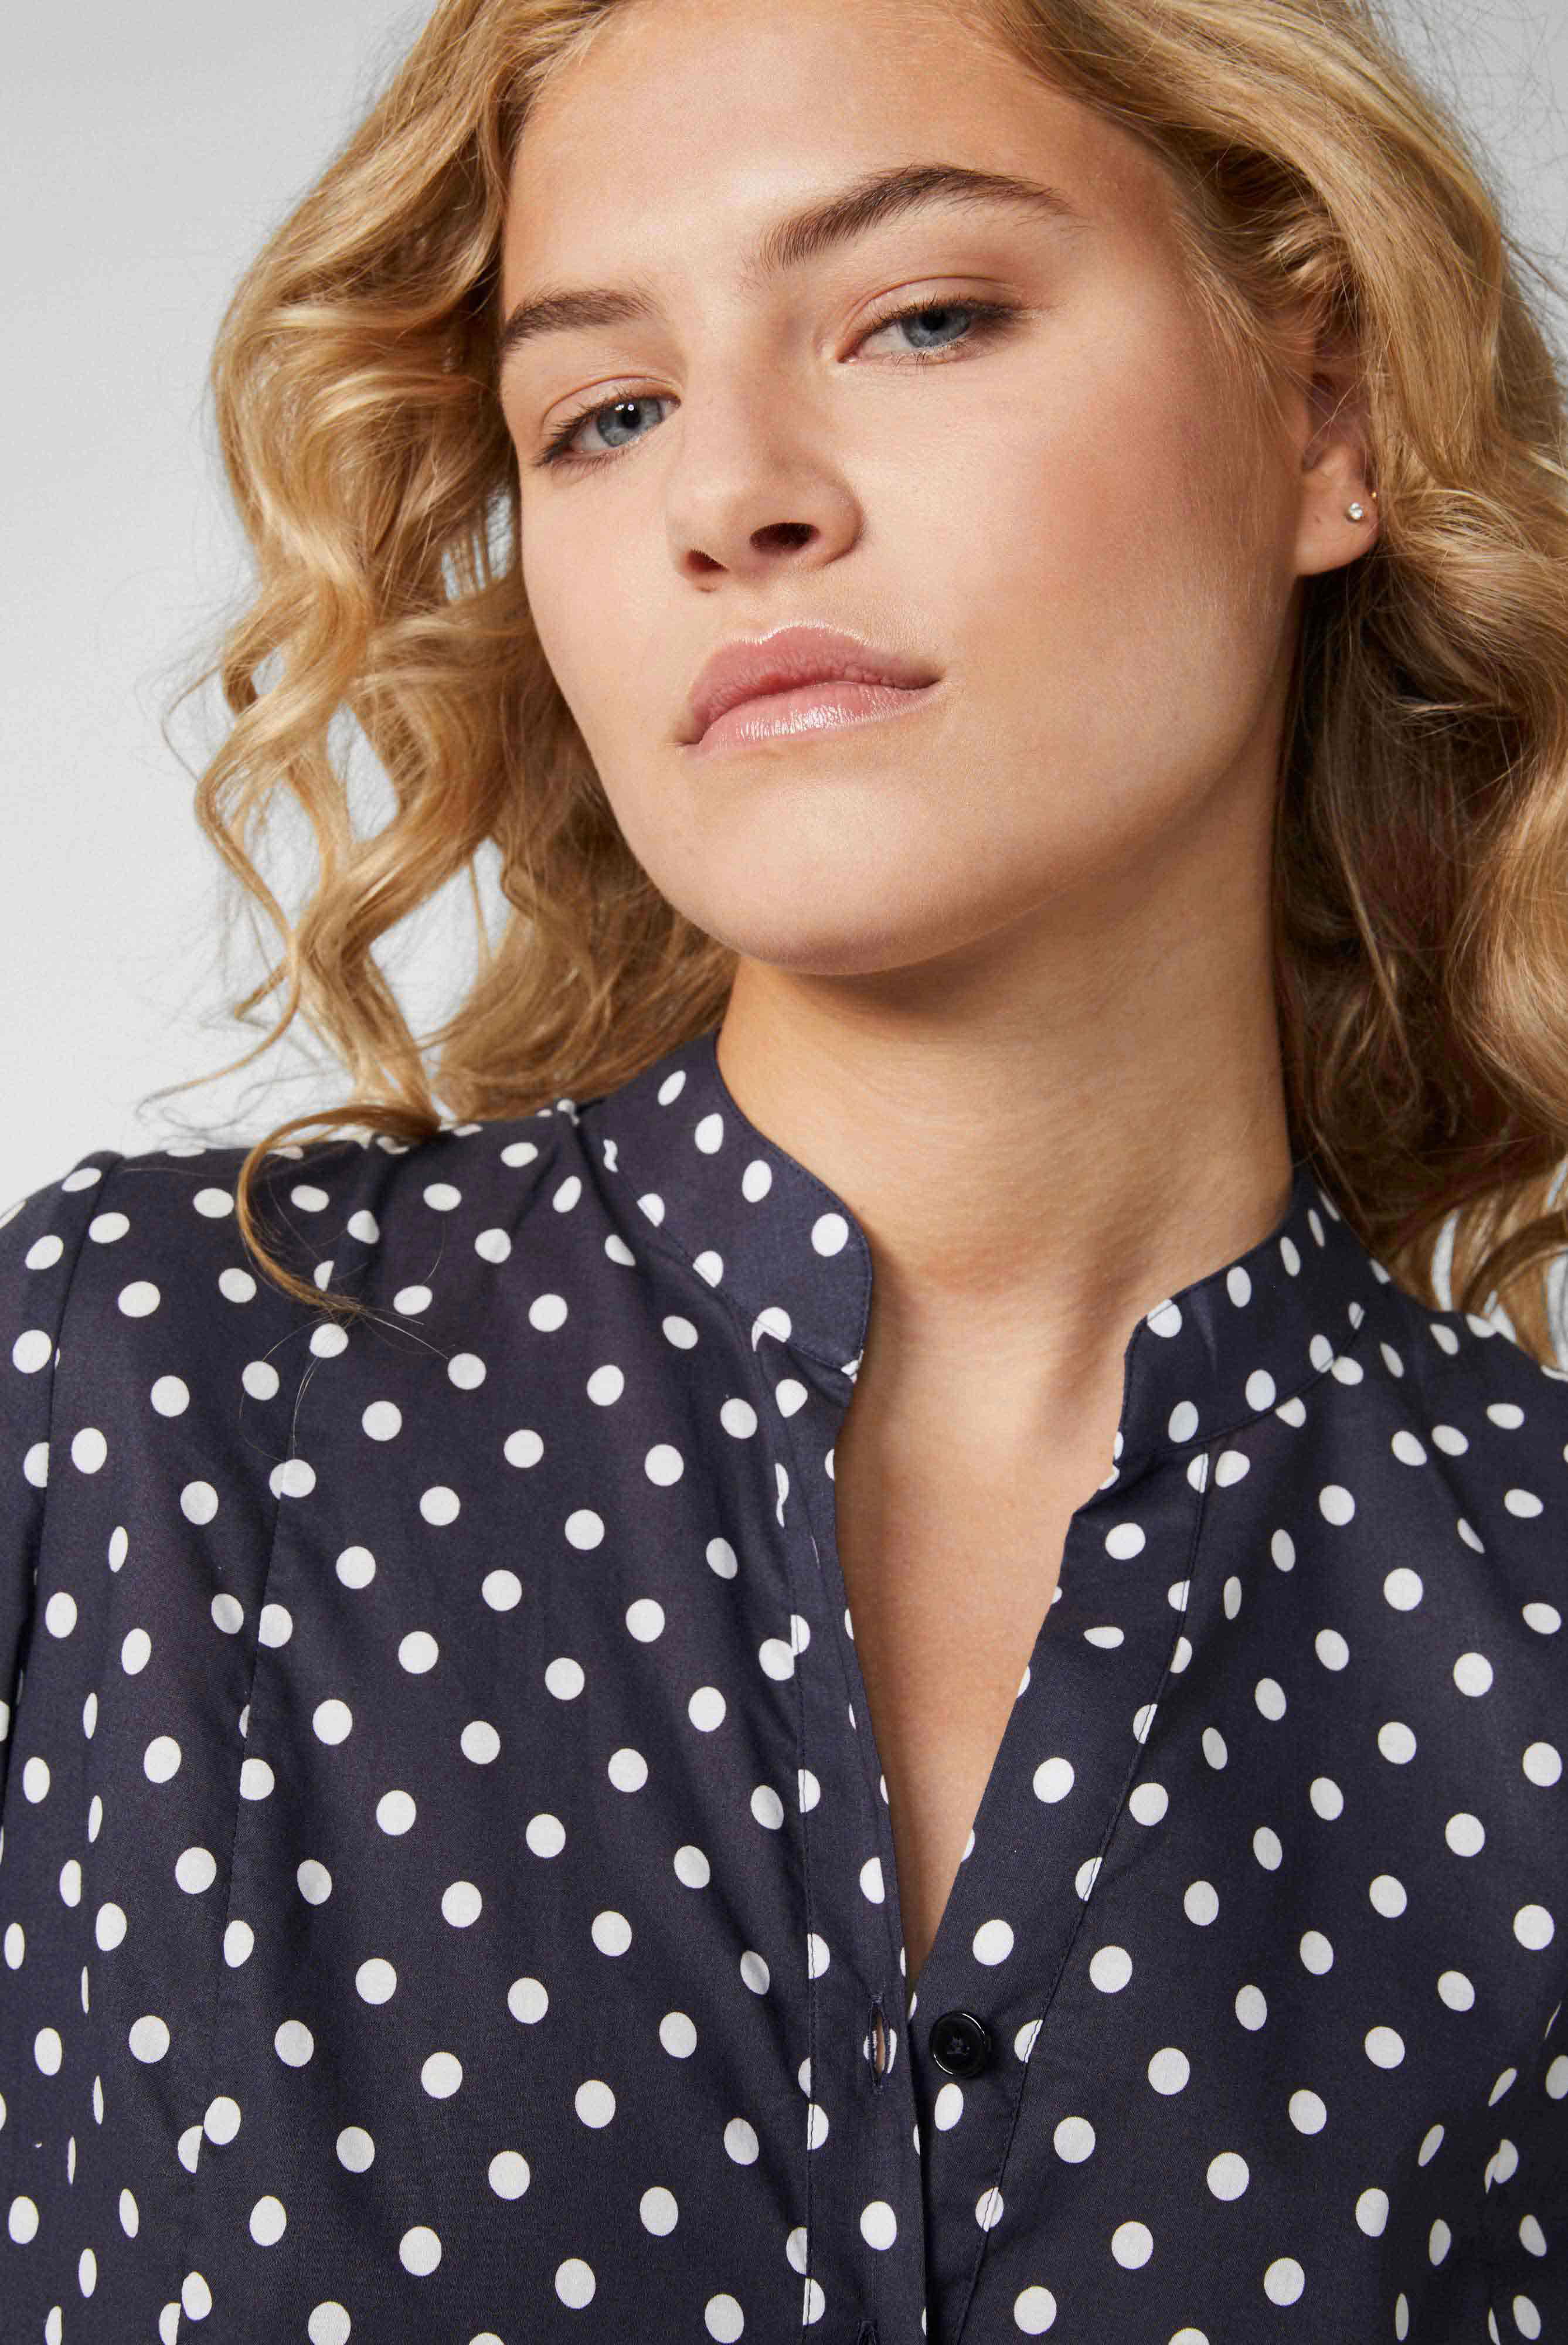 Kleider & Röcke+Mini-Slip-on-Kleid mit Godet-Details aus Baumwoll-Voile mit Punktdruck Blau+05.654Z.3F.170256.790.40